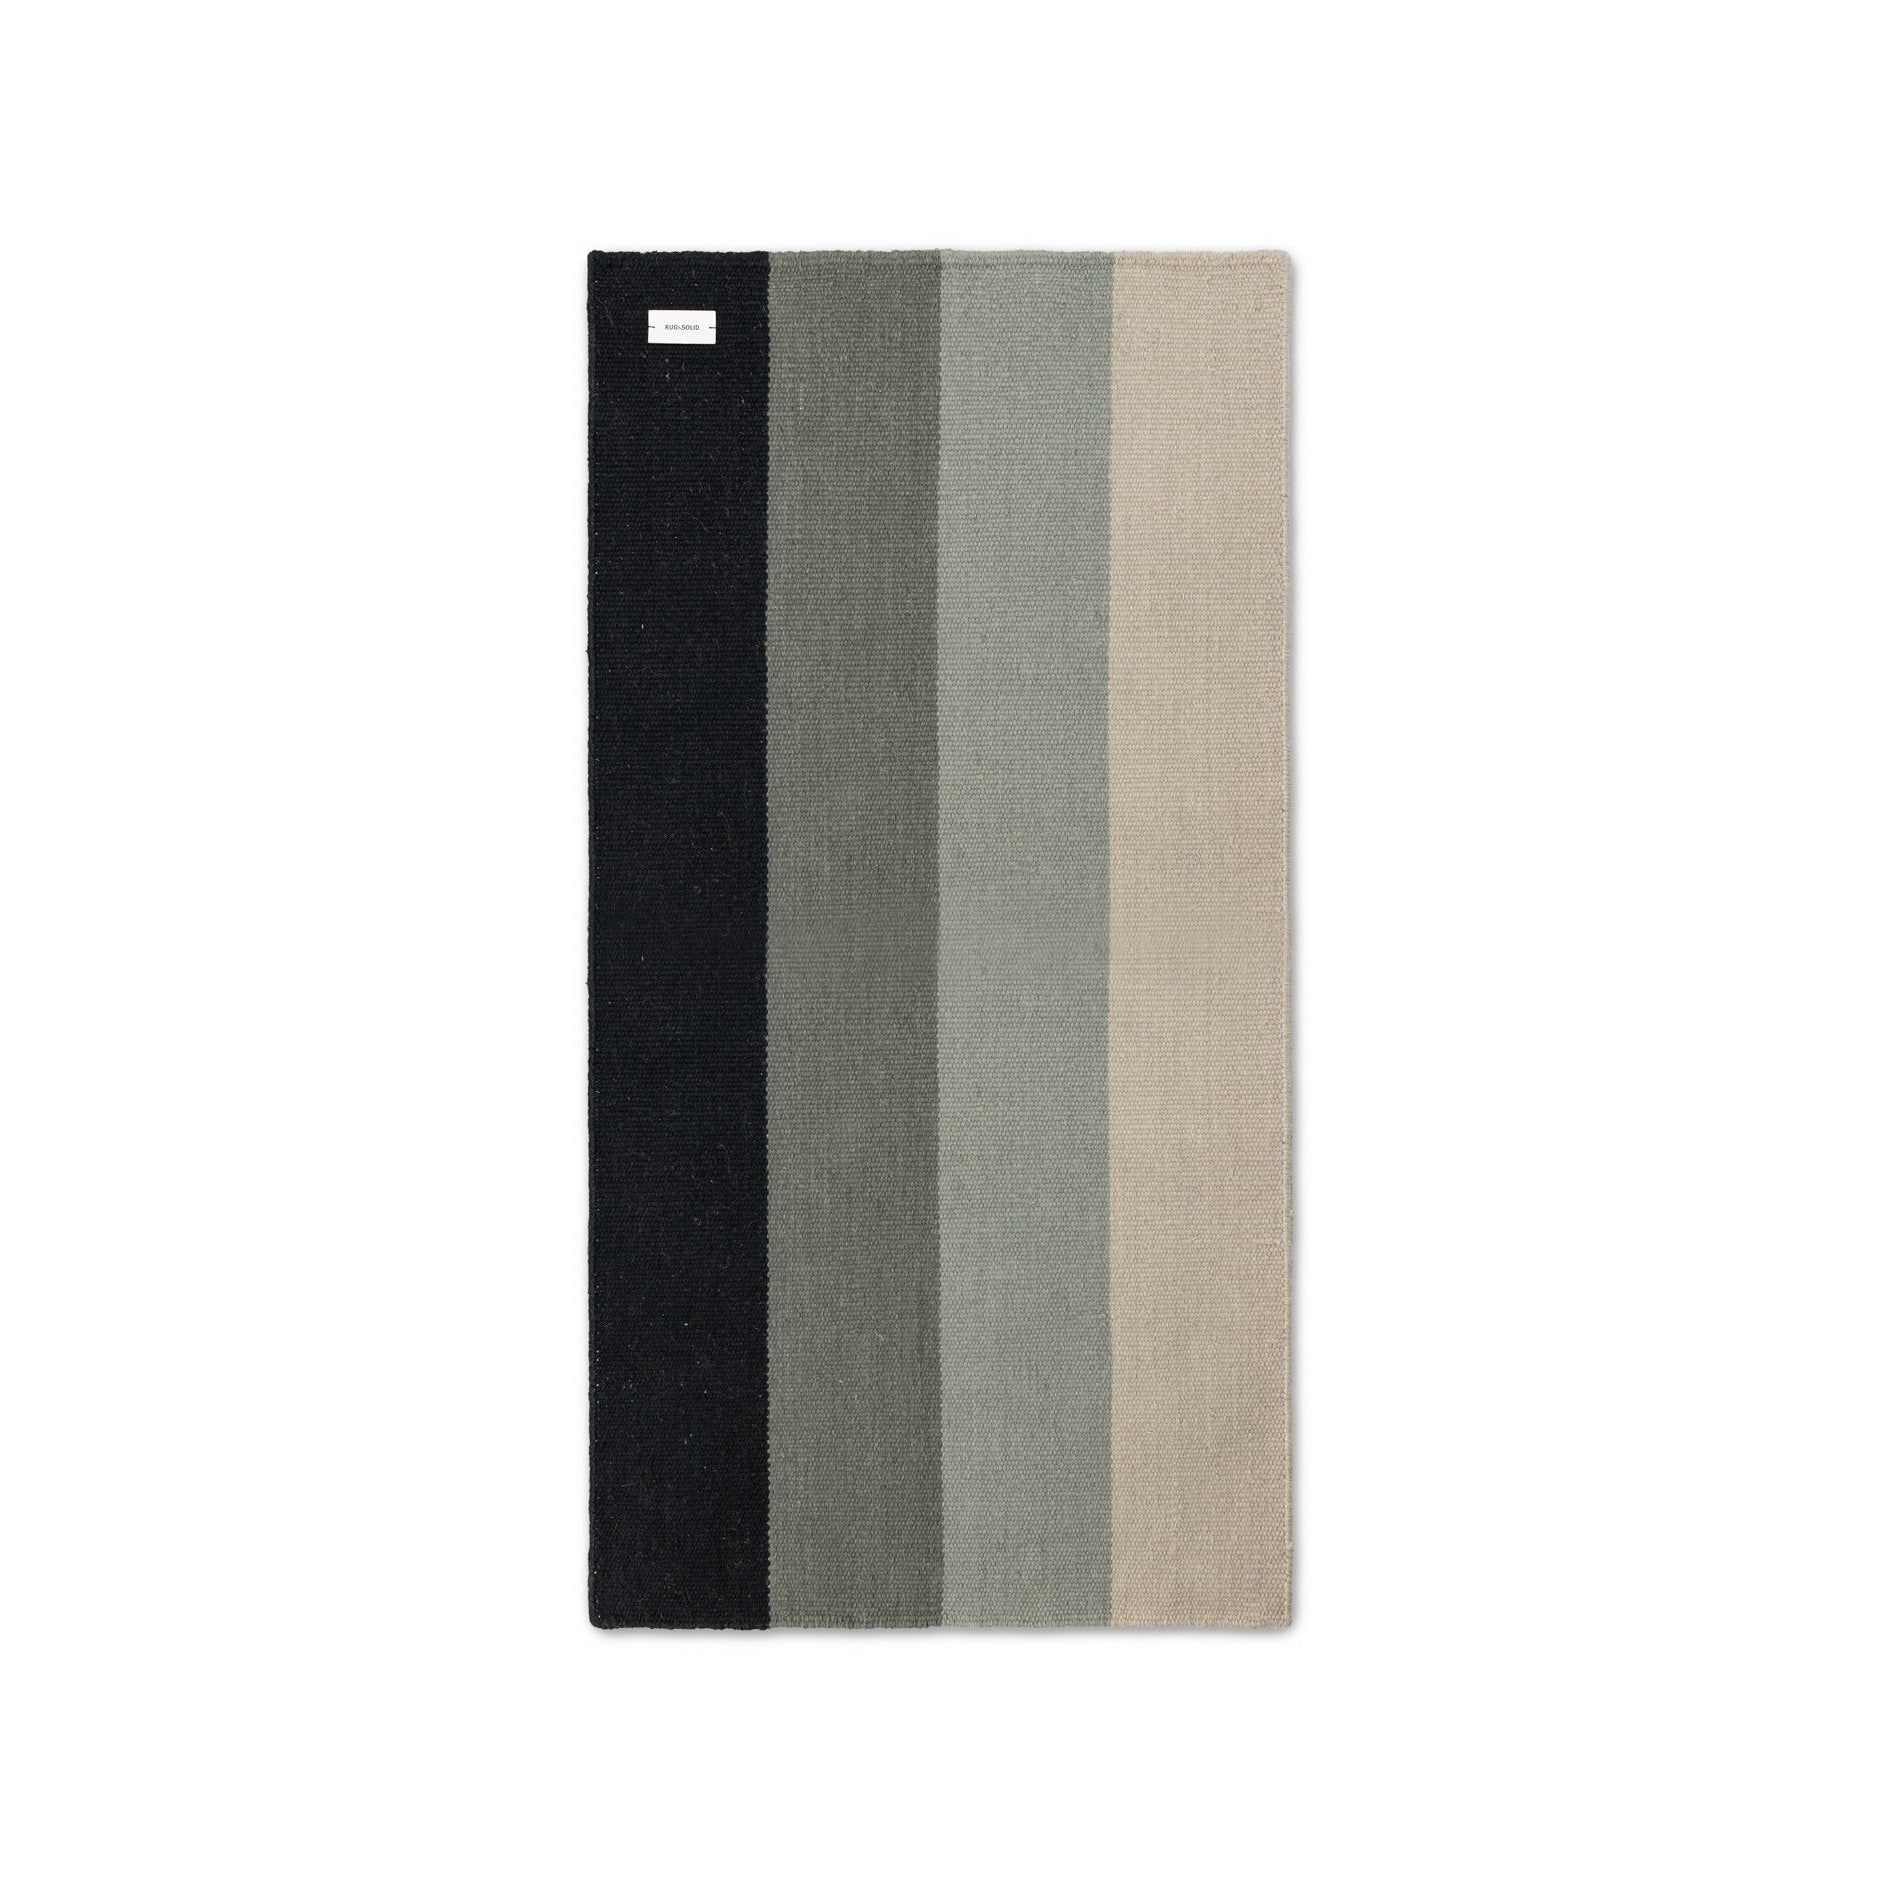 Rogge vaste huisdier tapijtgradiënt graniet, 75 x 200 cm